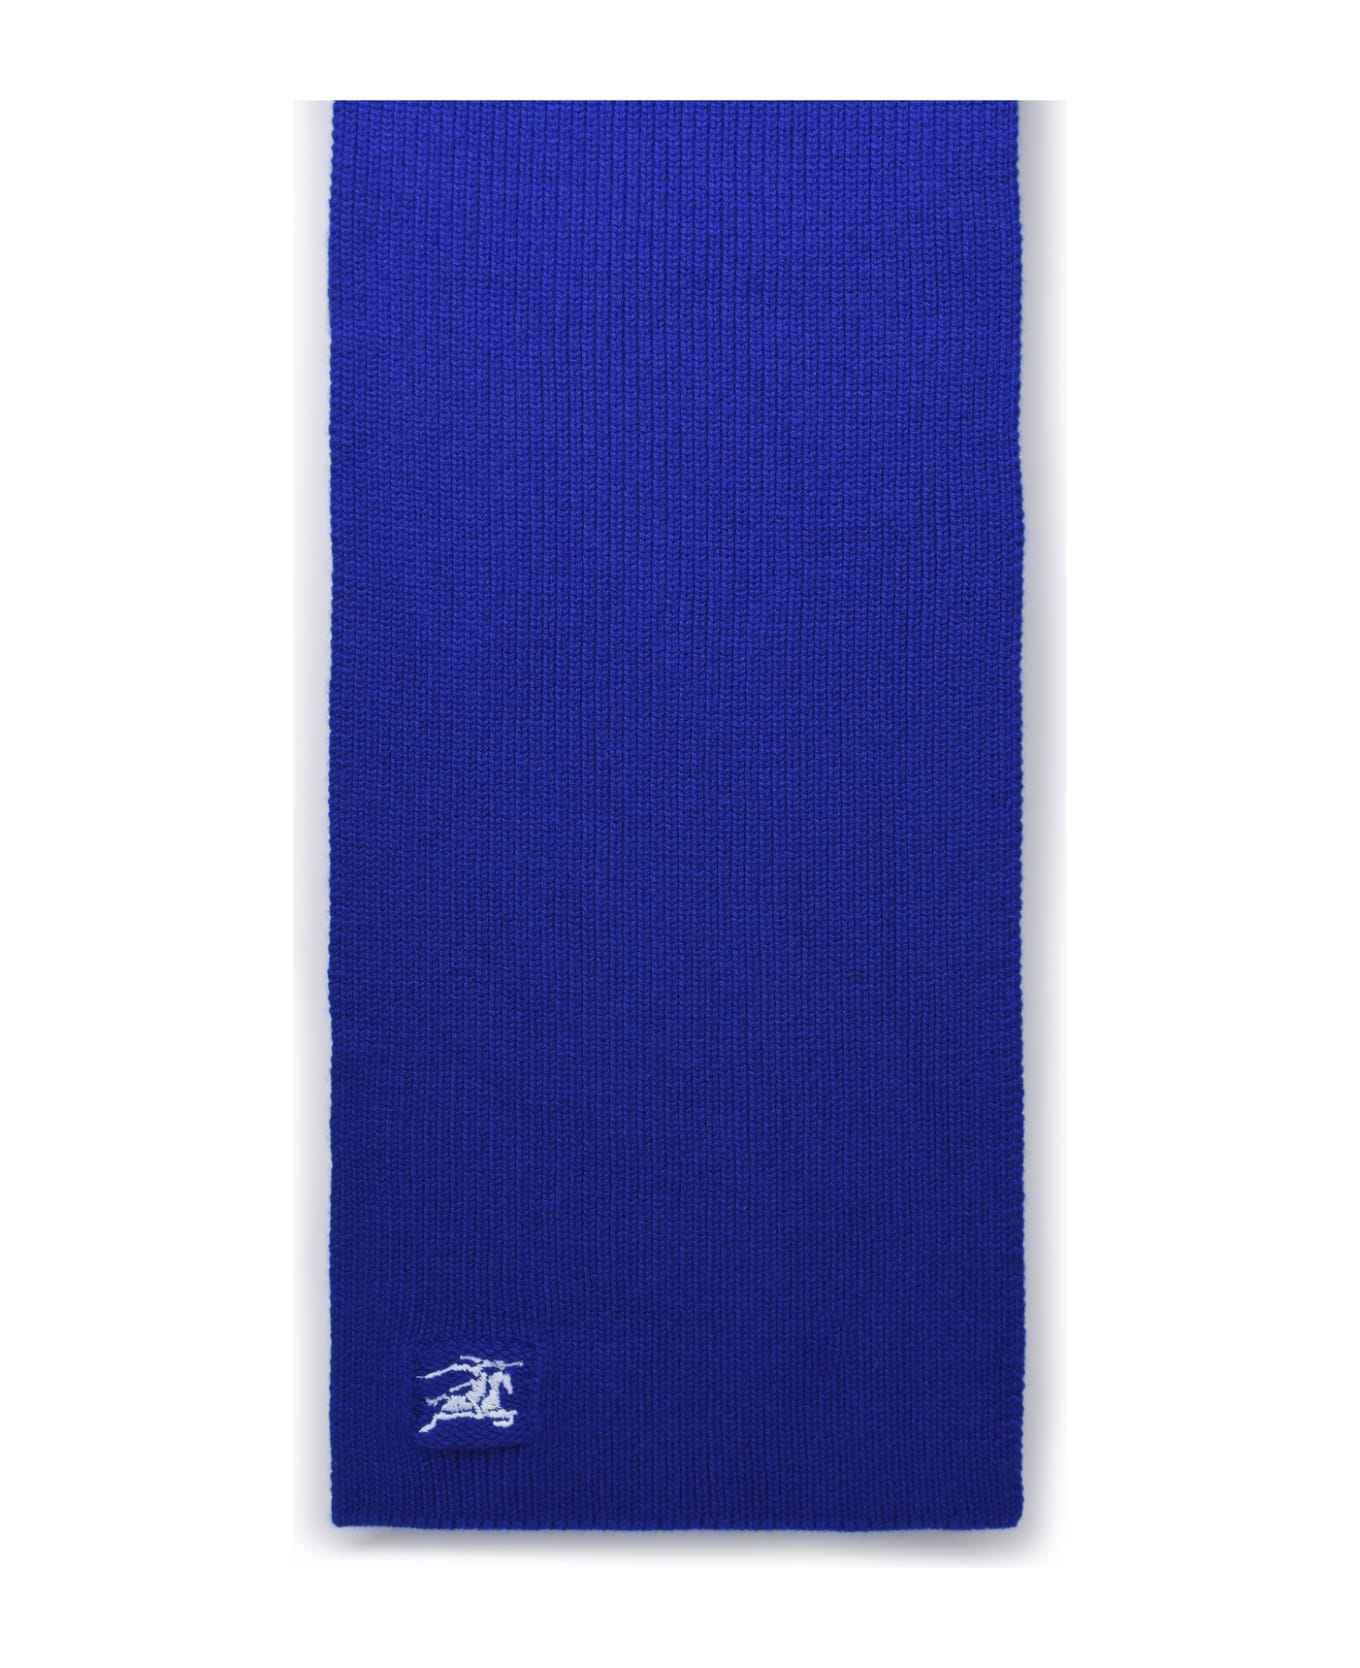 Burberry Blue Cashmere Scarf - BLUE スカーフ